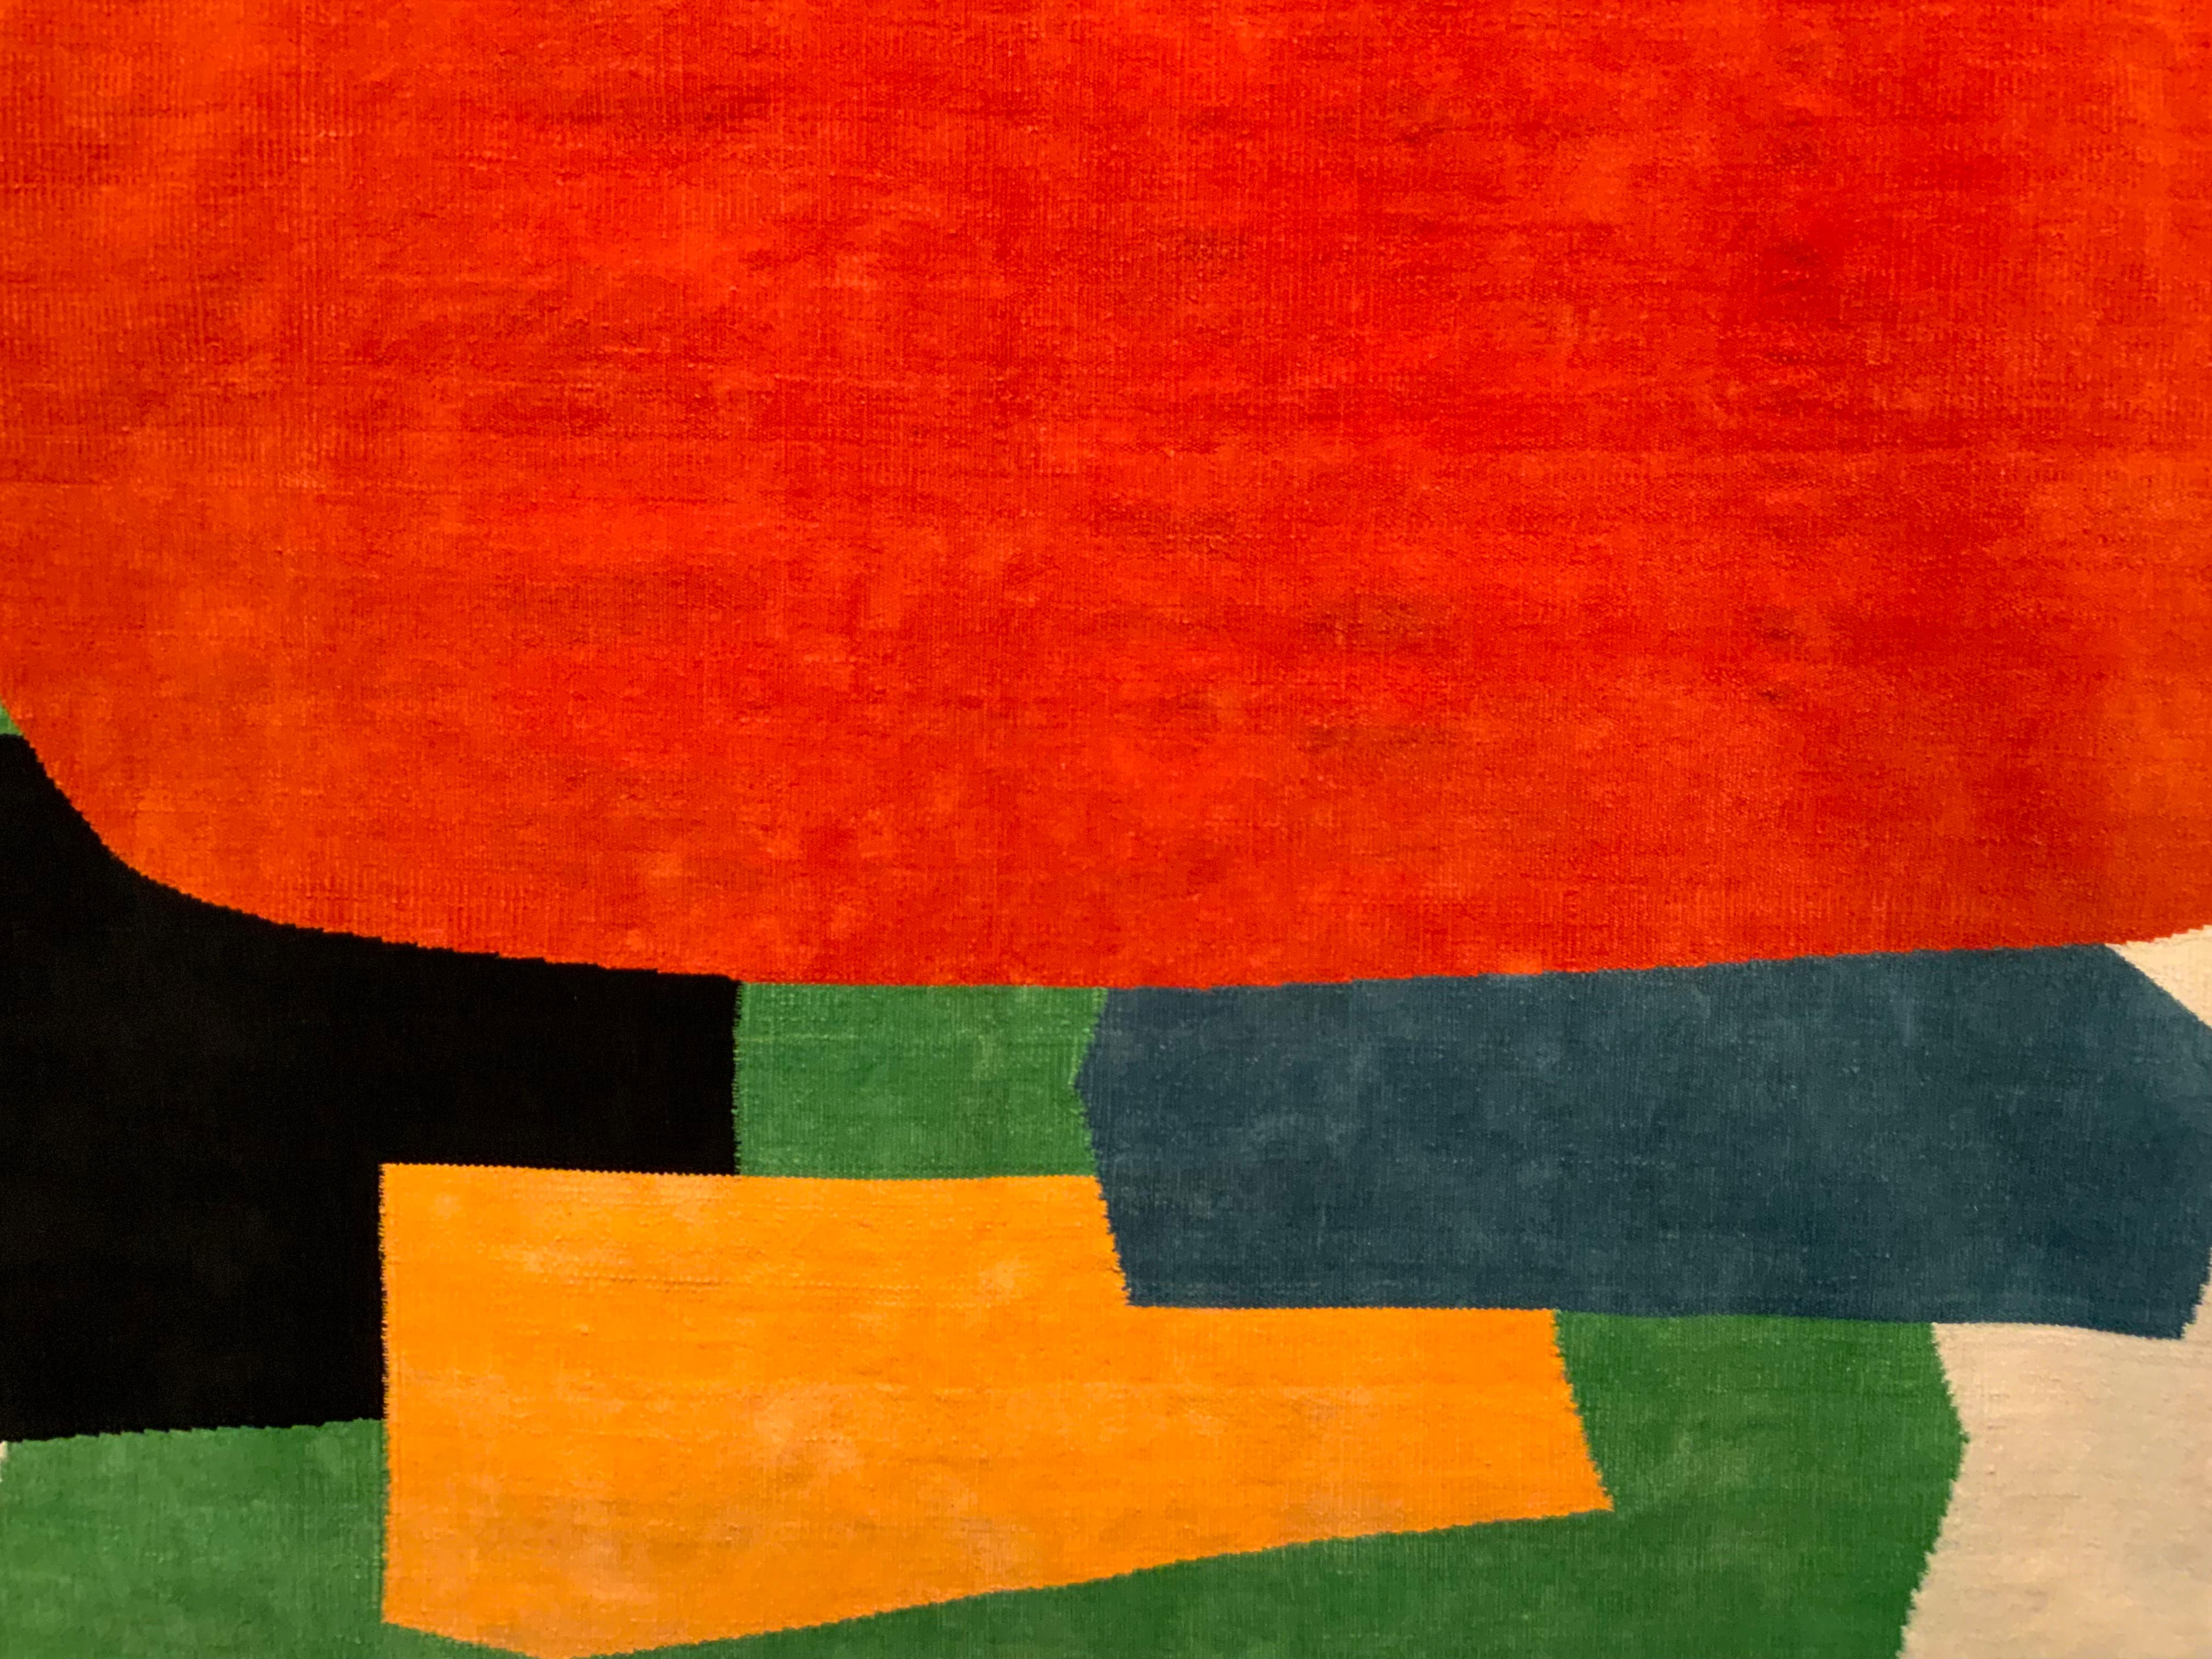 Moderner Wandteppich von Guido Maggiori (geb. 1944) Kühne, farbenfrohe abstrakte Komposition mit dem Titel 